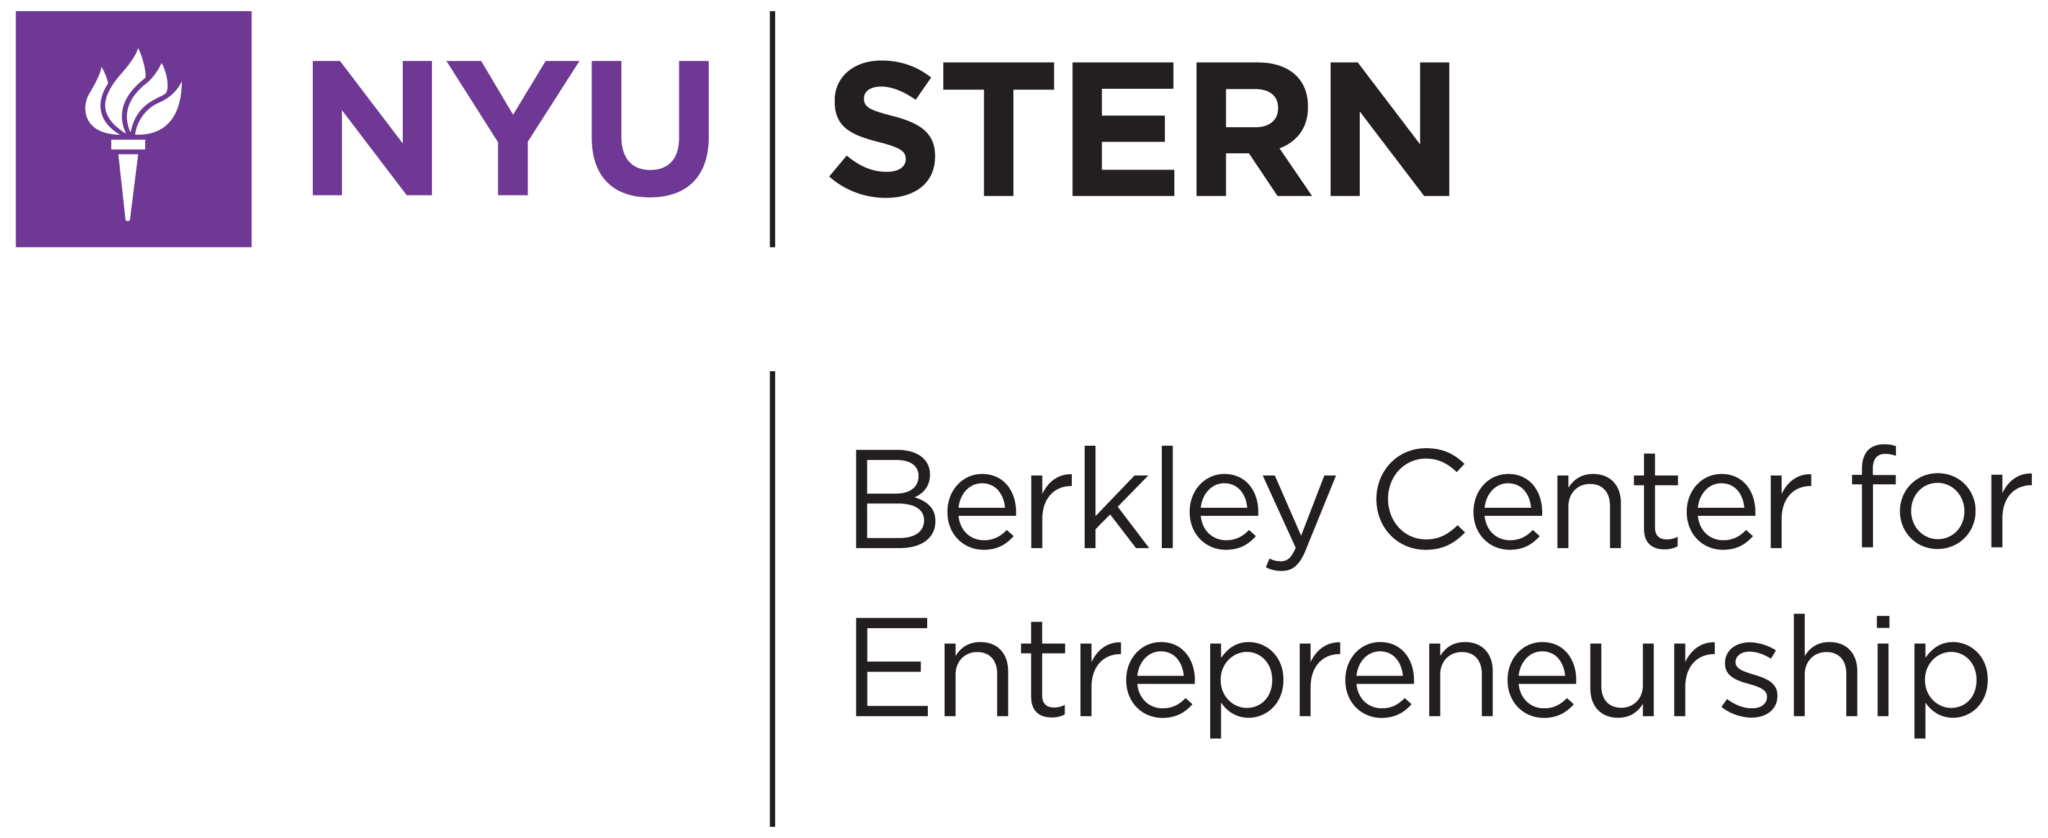 Berkley Center for Entrepreneurship